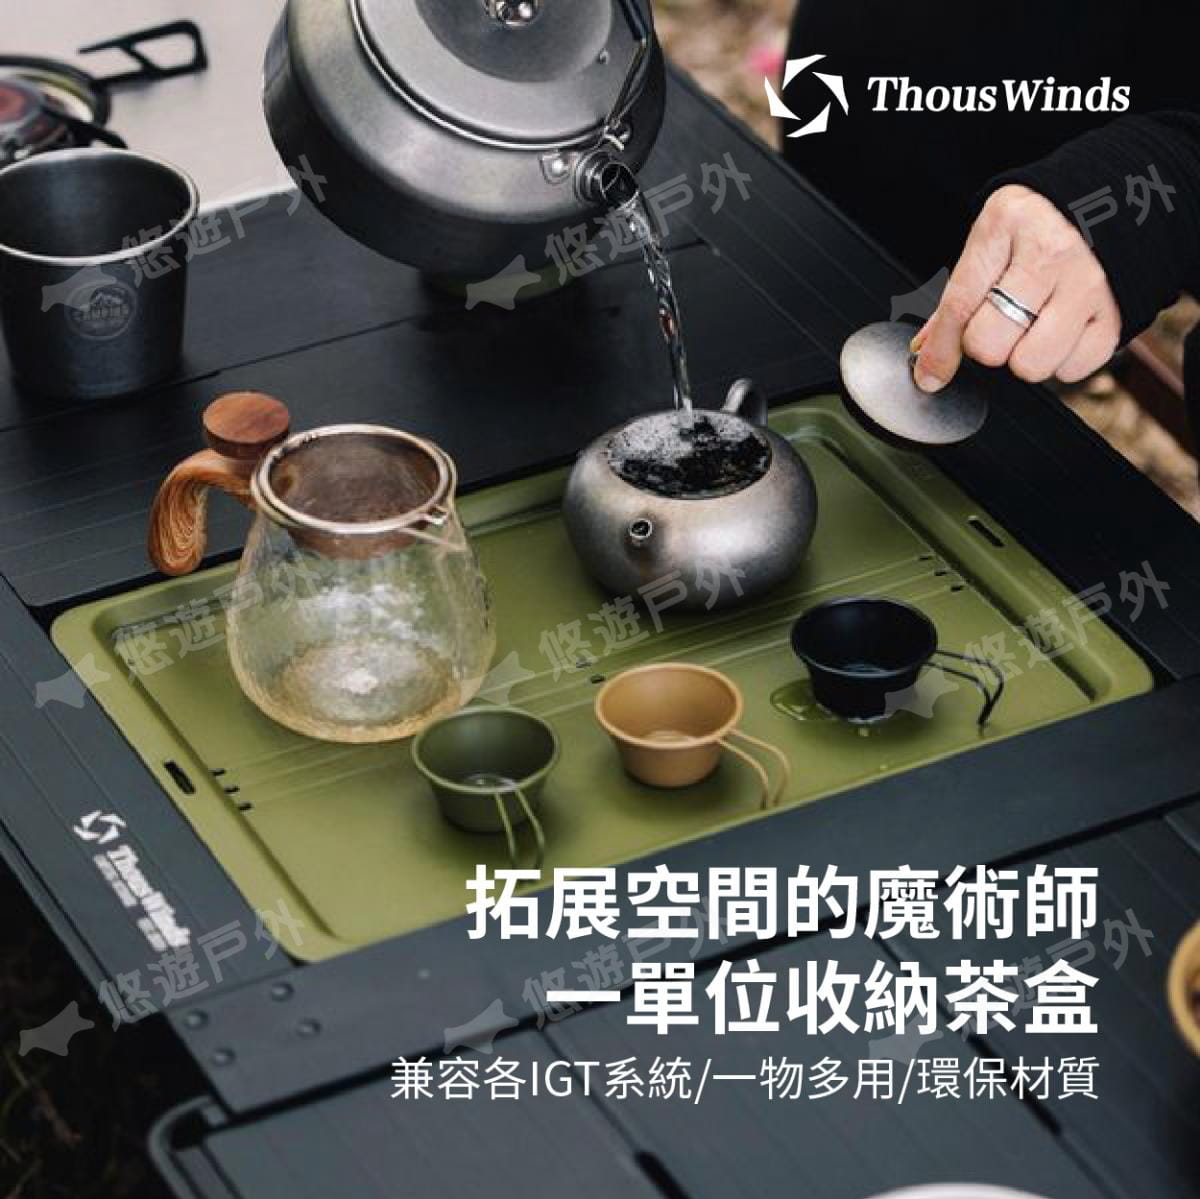 【Thous Winds】 一單元收納茶盒 三色 TW-IGT09B/G/K 悠遊戶外 2